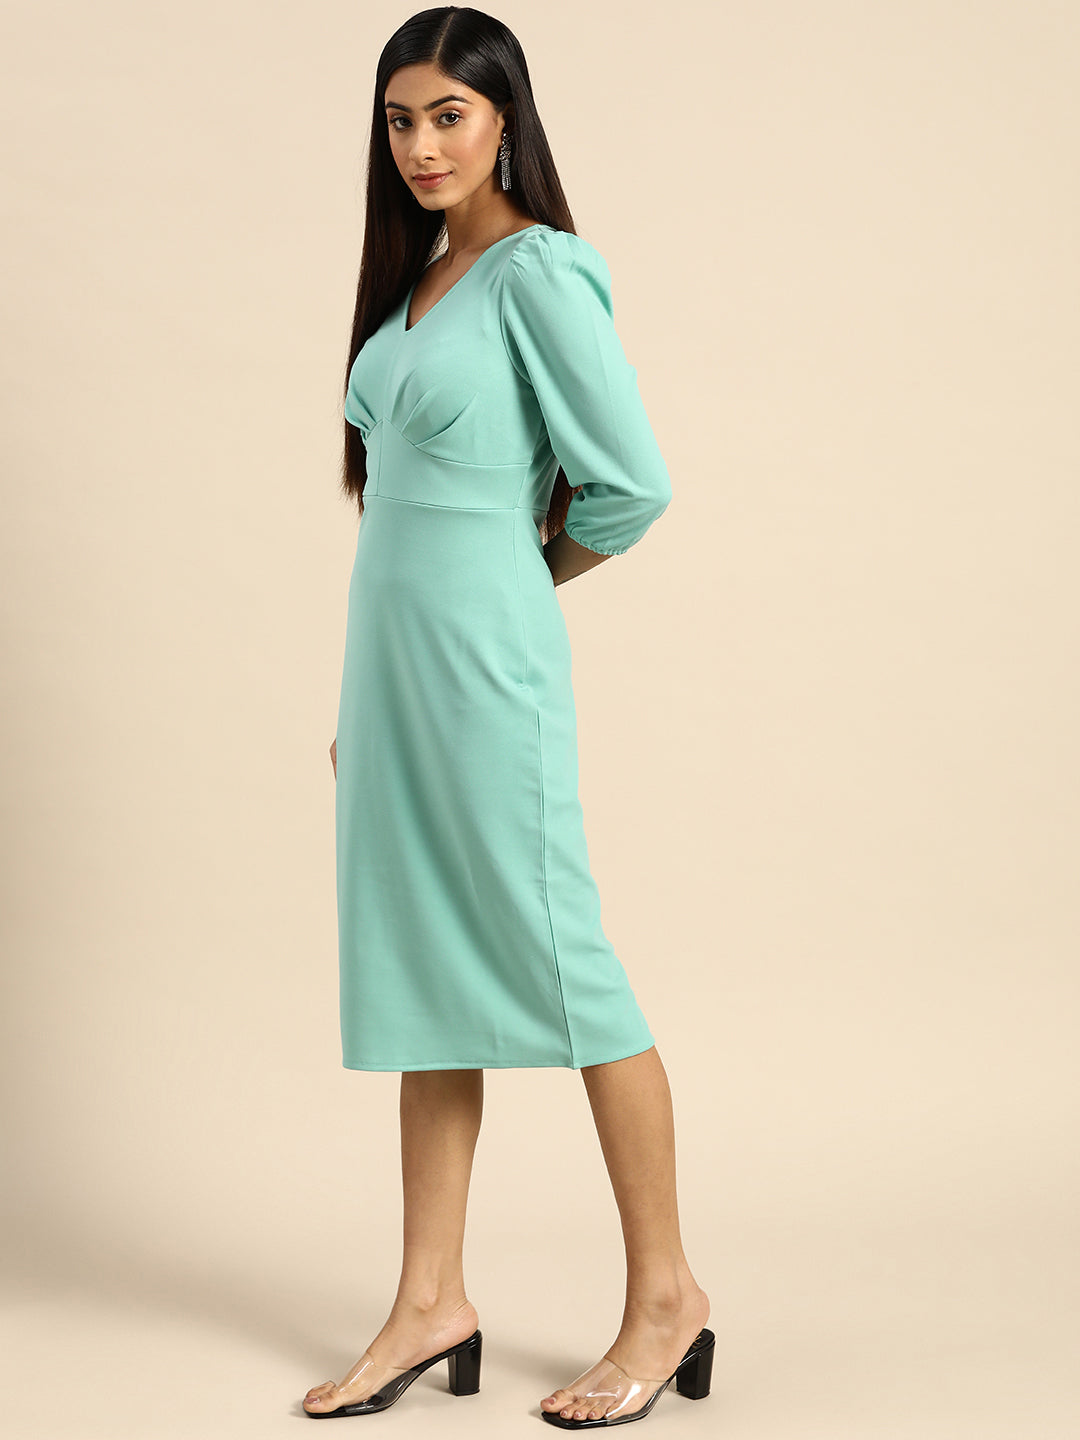 Athena Turquoise Blue Bodycon Midi Dress - Athena Lifestyle